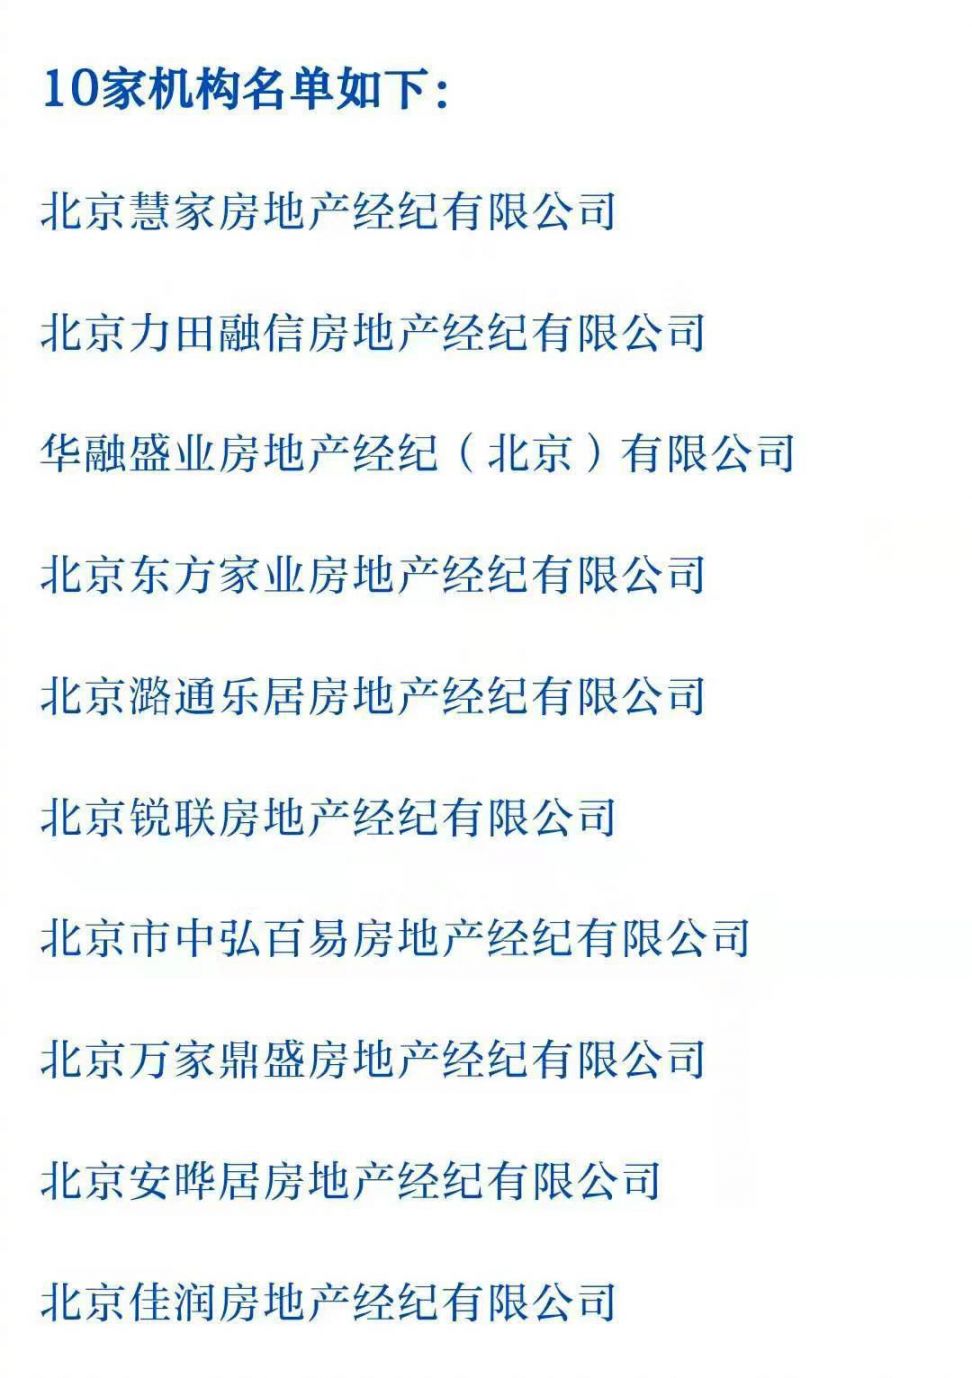 北京这10家中介机构发布不实房源信息被查处